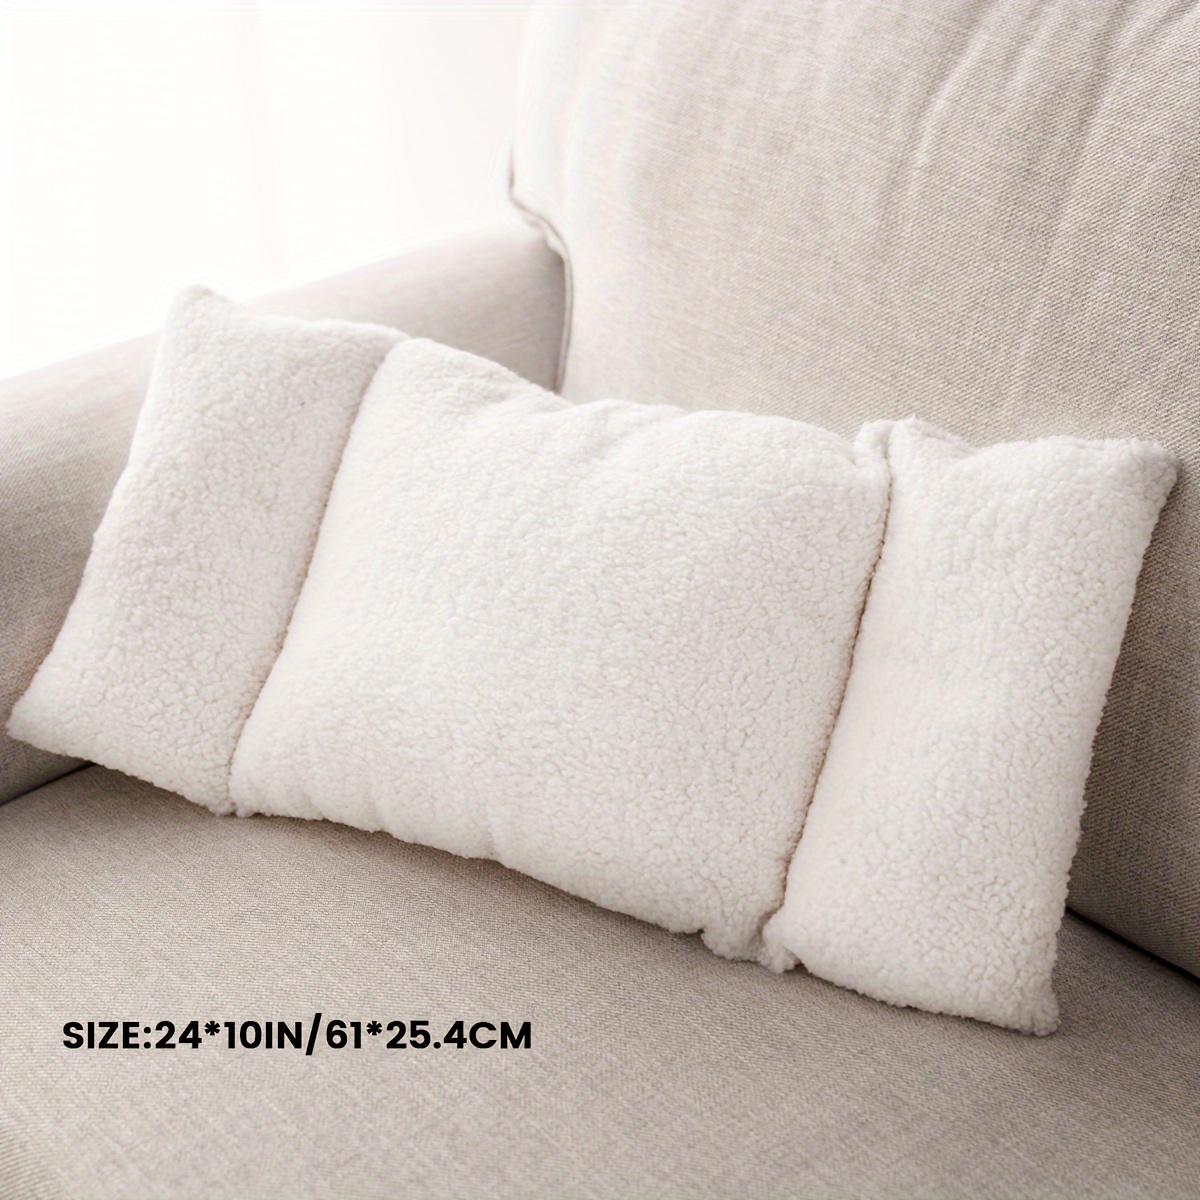 Best Deal for 2 Pcs Fleece Lumbar Back Support Pillow 3 Section Lumbar